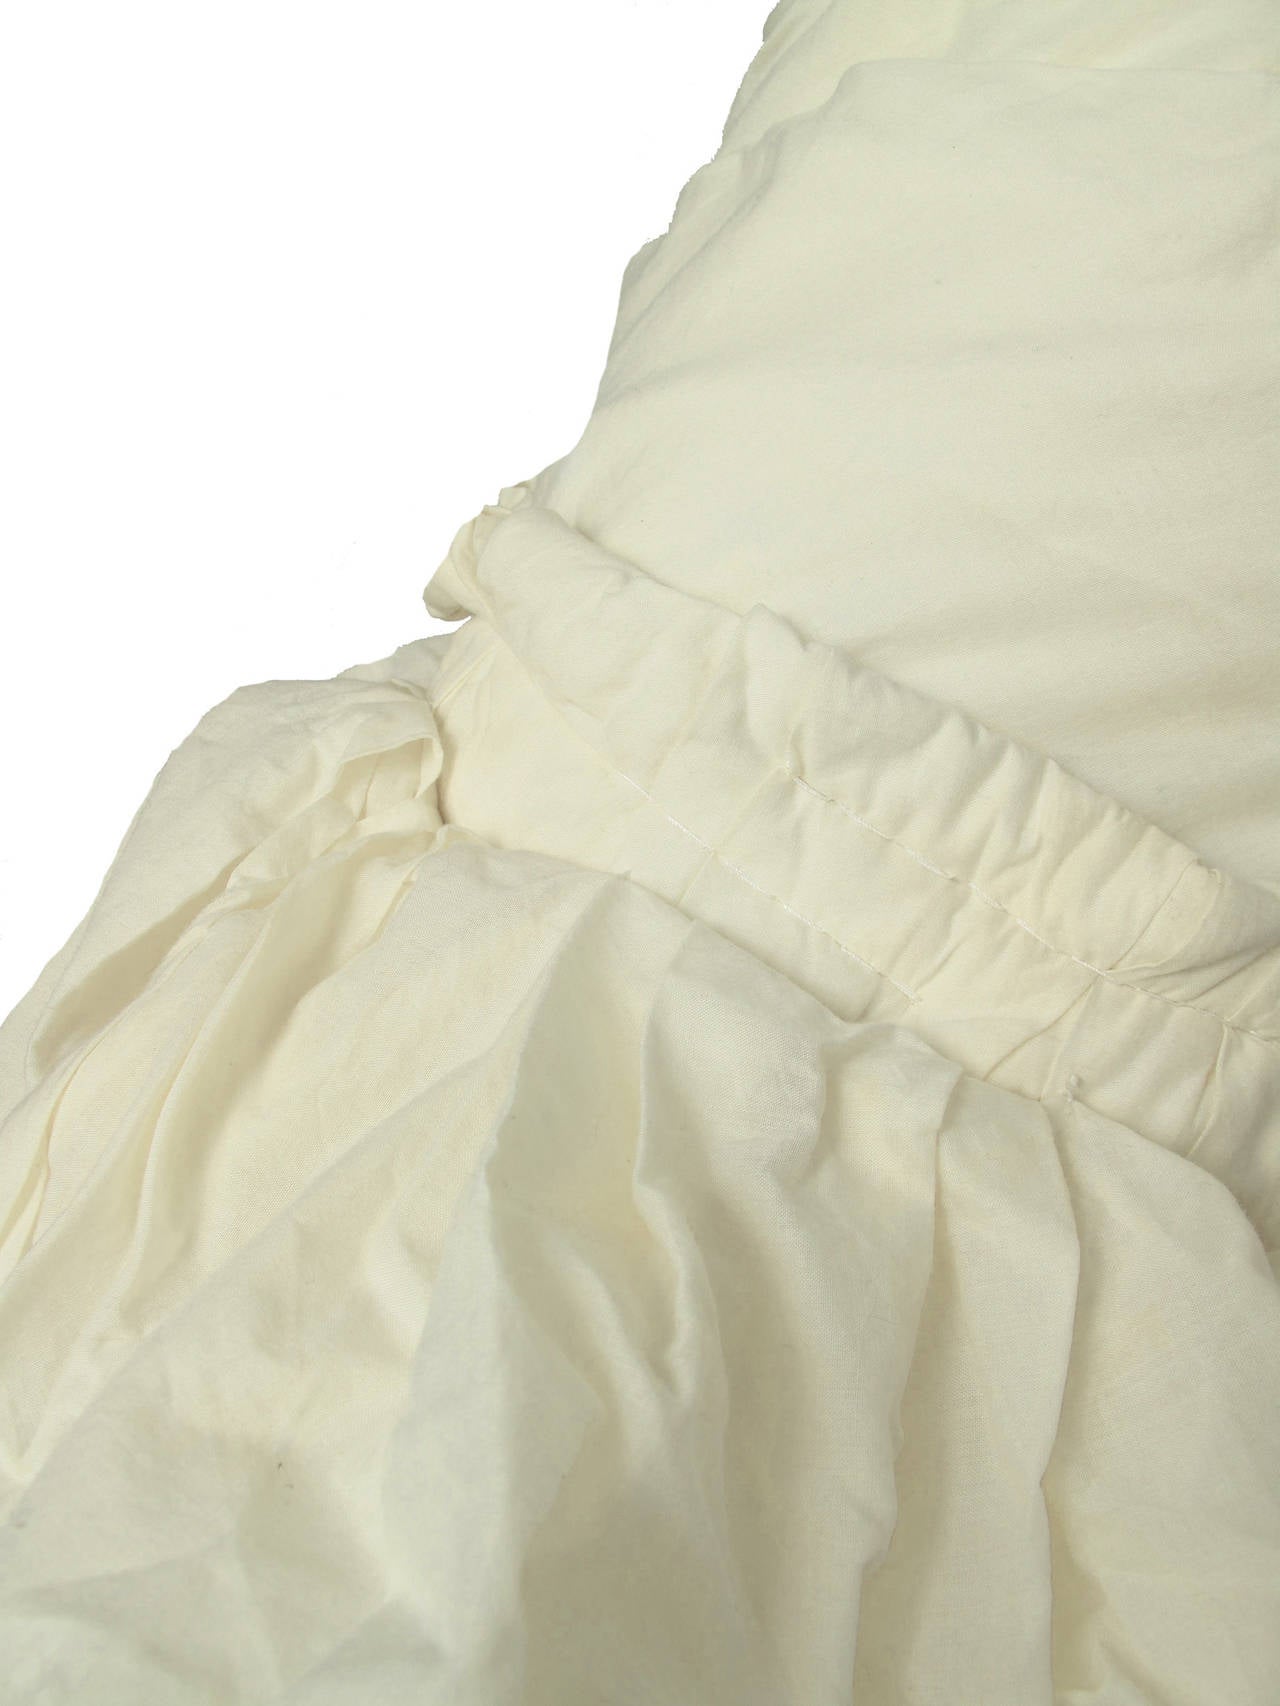 2005 Comme des Garçons cotton muslin deconstructed skirt. 28